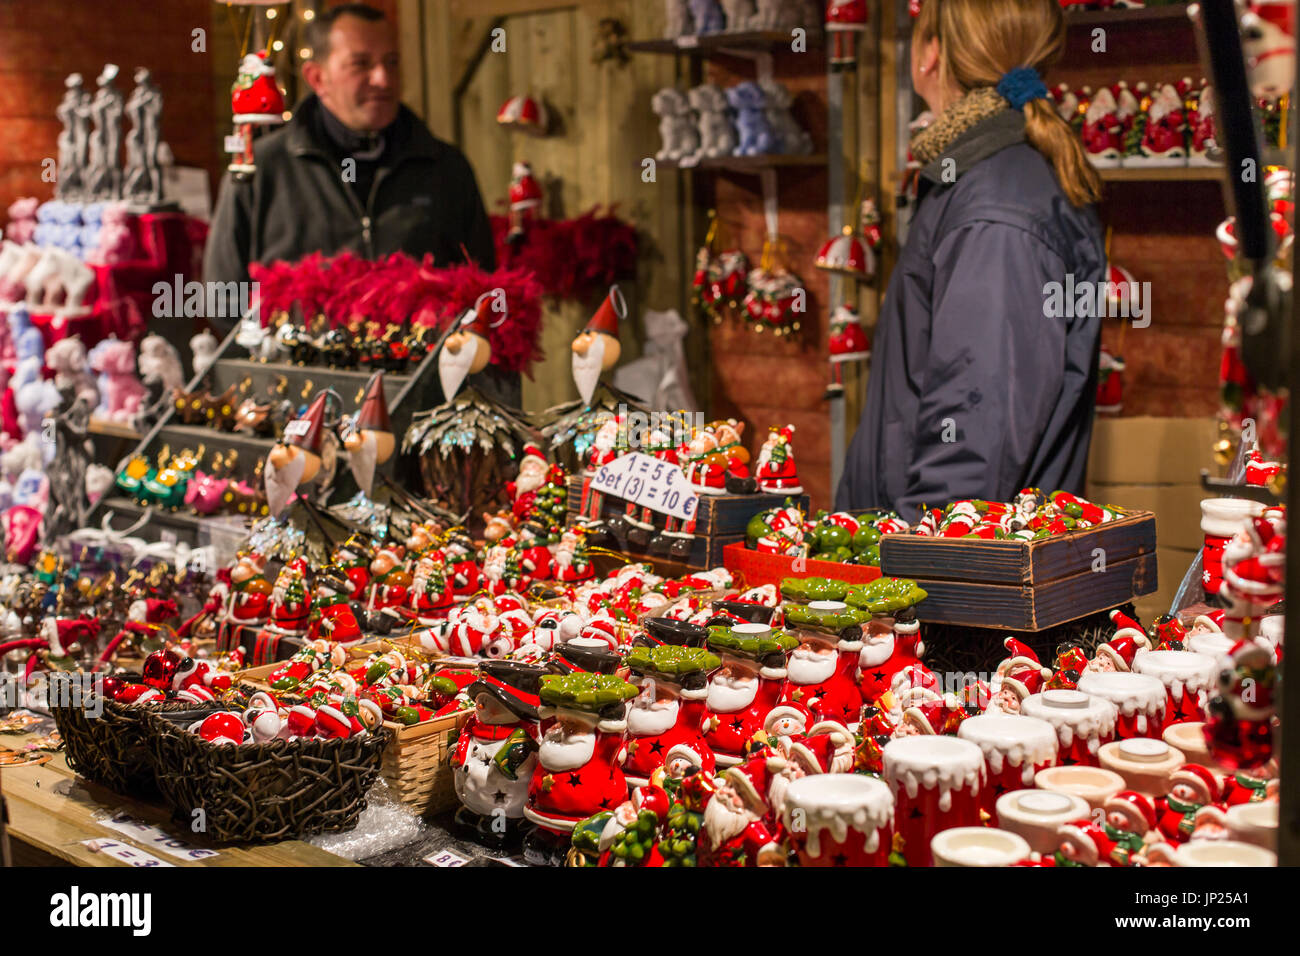 Brügge, Belgien - 15. Dezember 2013: Weihnachten Marktstand verkaufen Weihnachtsschmuck und Schmuck und Souvenirs in Brügge, Belgien. Stockfoto